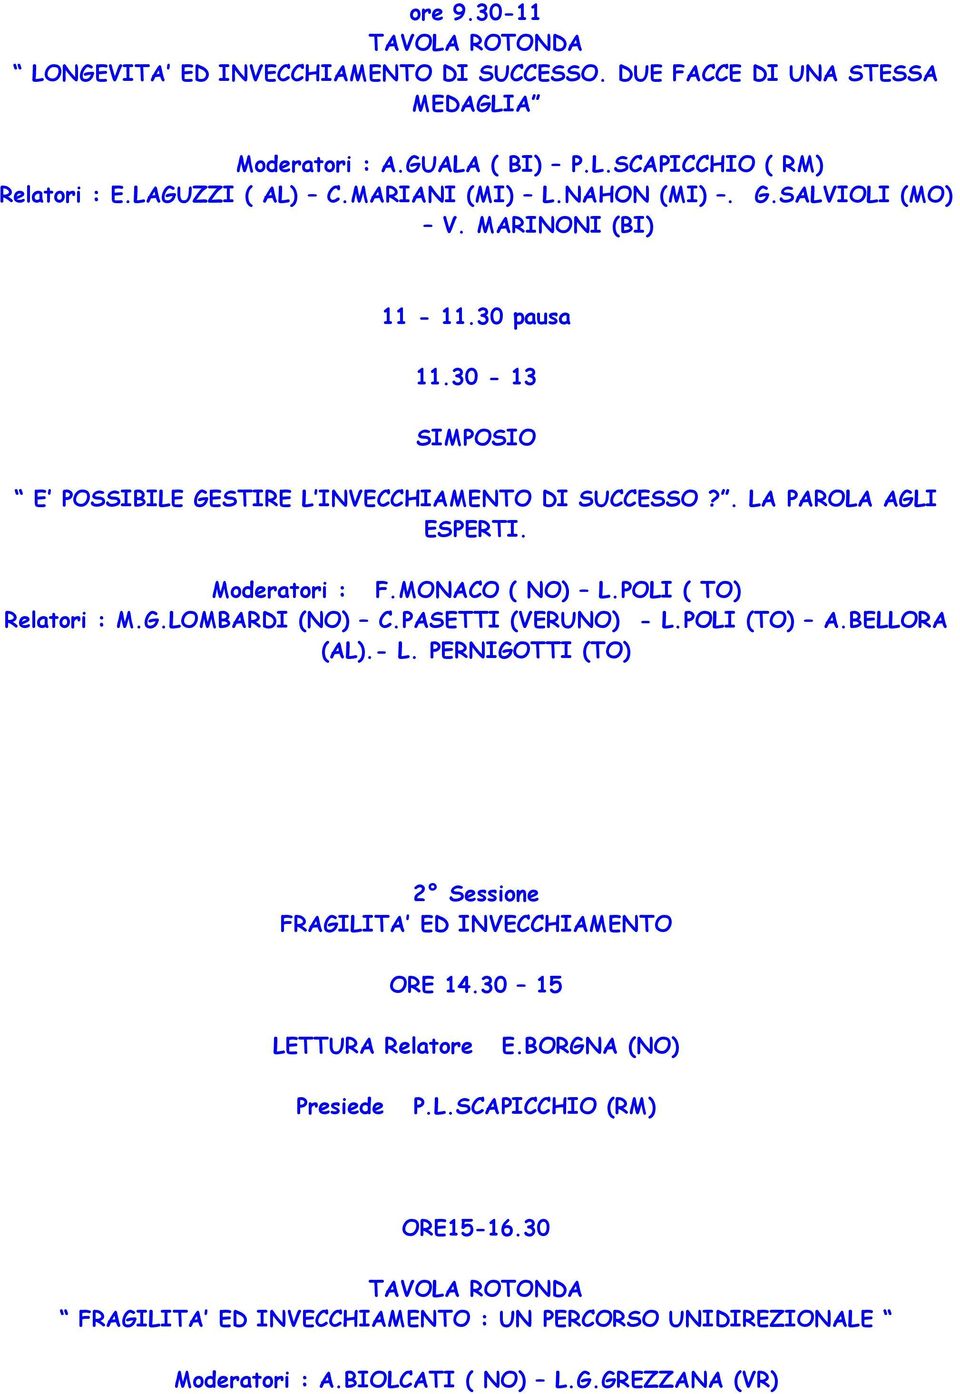 Moderatori : F.MONACO ( NO) L.POLI ( TO) Relatori : M.G.LOMBARDI (NO) C.PASETTI (VERUNO) - L.POLI (TO) A.BELLORA (AL).- L. PERNIGOTTI (TO) 2 Sessione FRAGILITA ED INVECCHIAMENTO ORE 14.